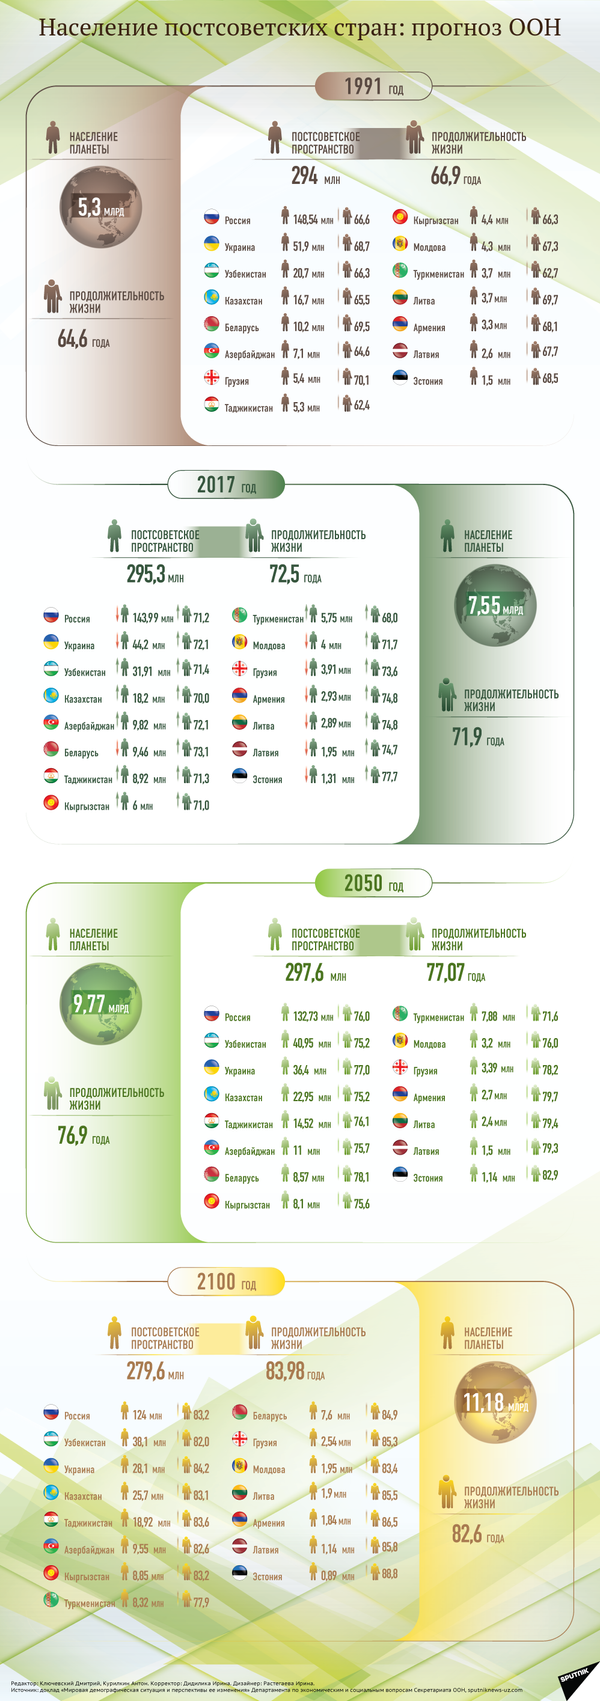 Численность населения в странах на постсоветском пространстве - Sputnik Узбекистан